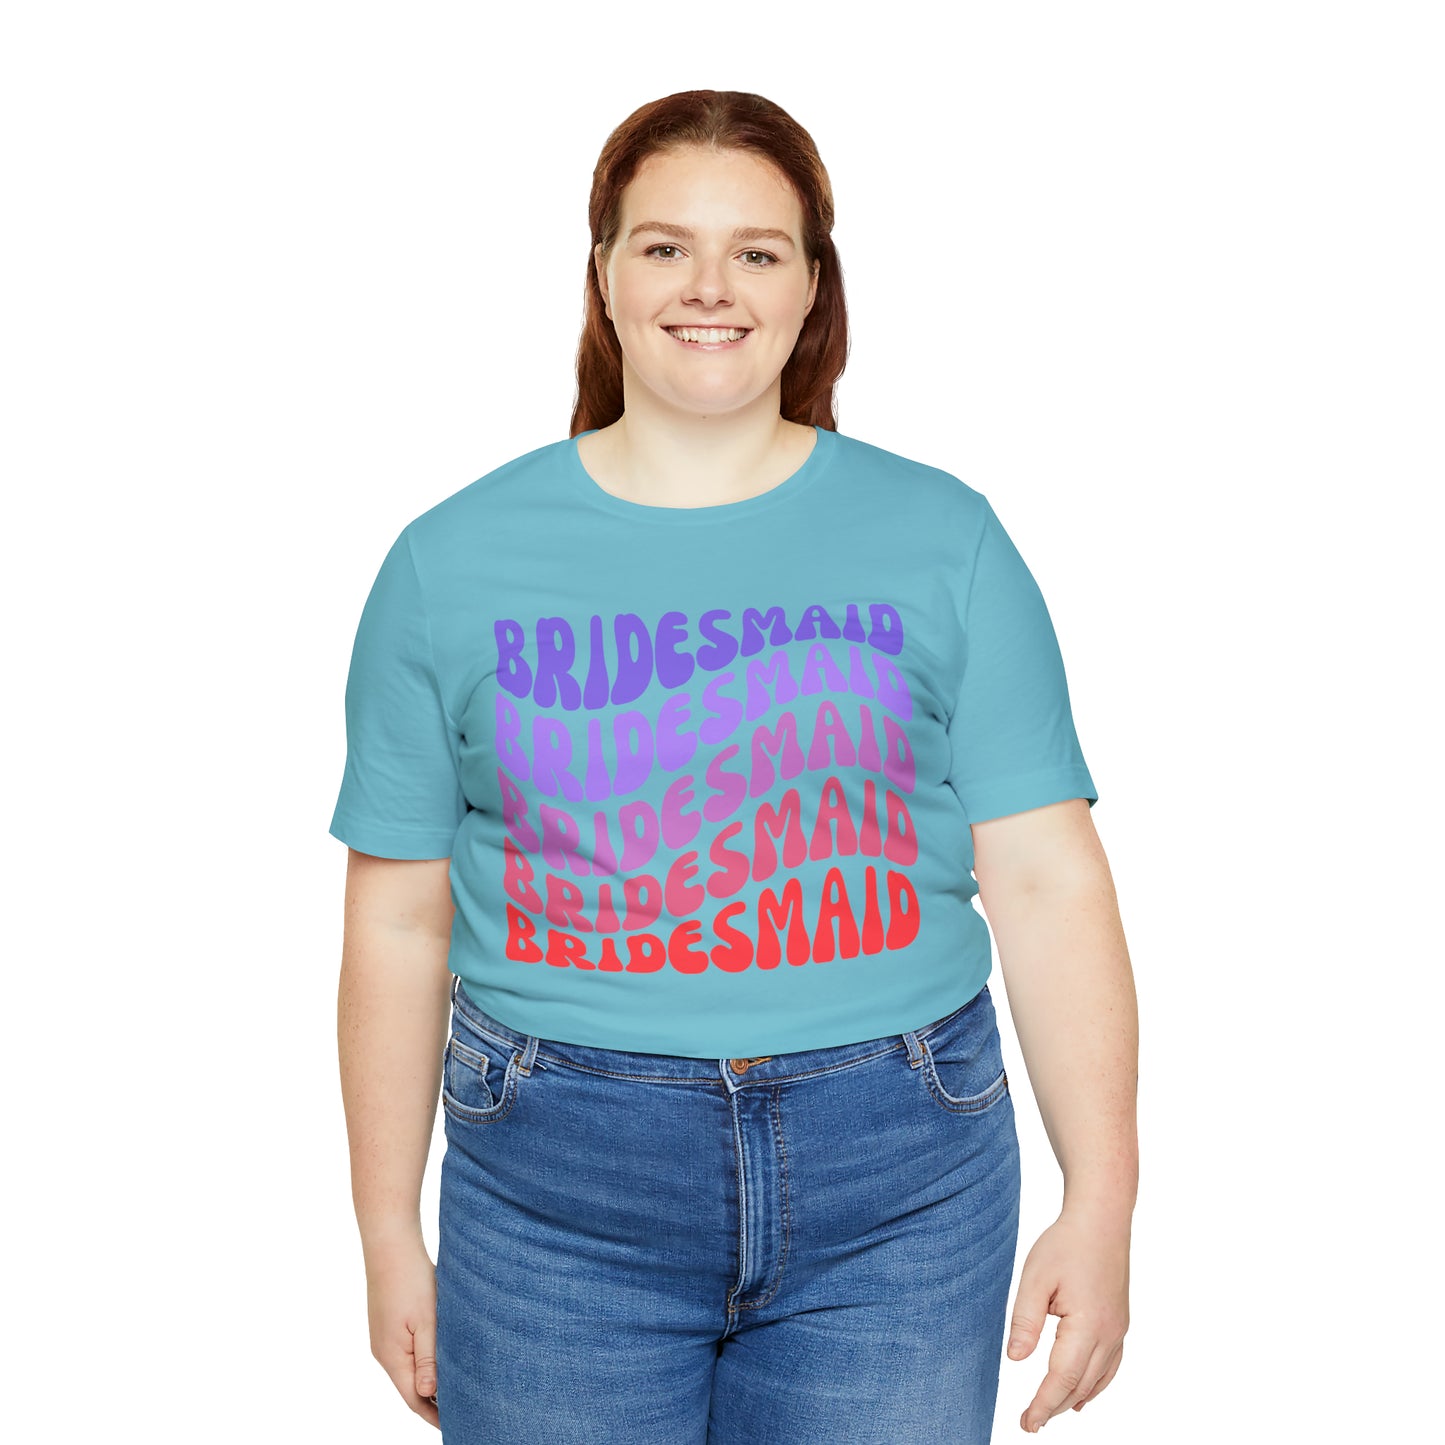 Retro Bridesmaid TShirt, Bridesmaid Shirt for Women, T287